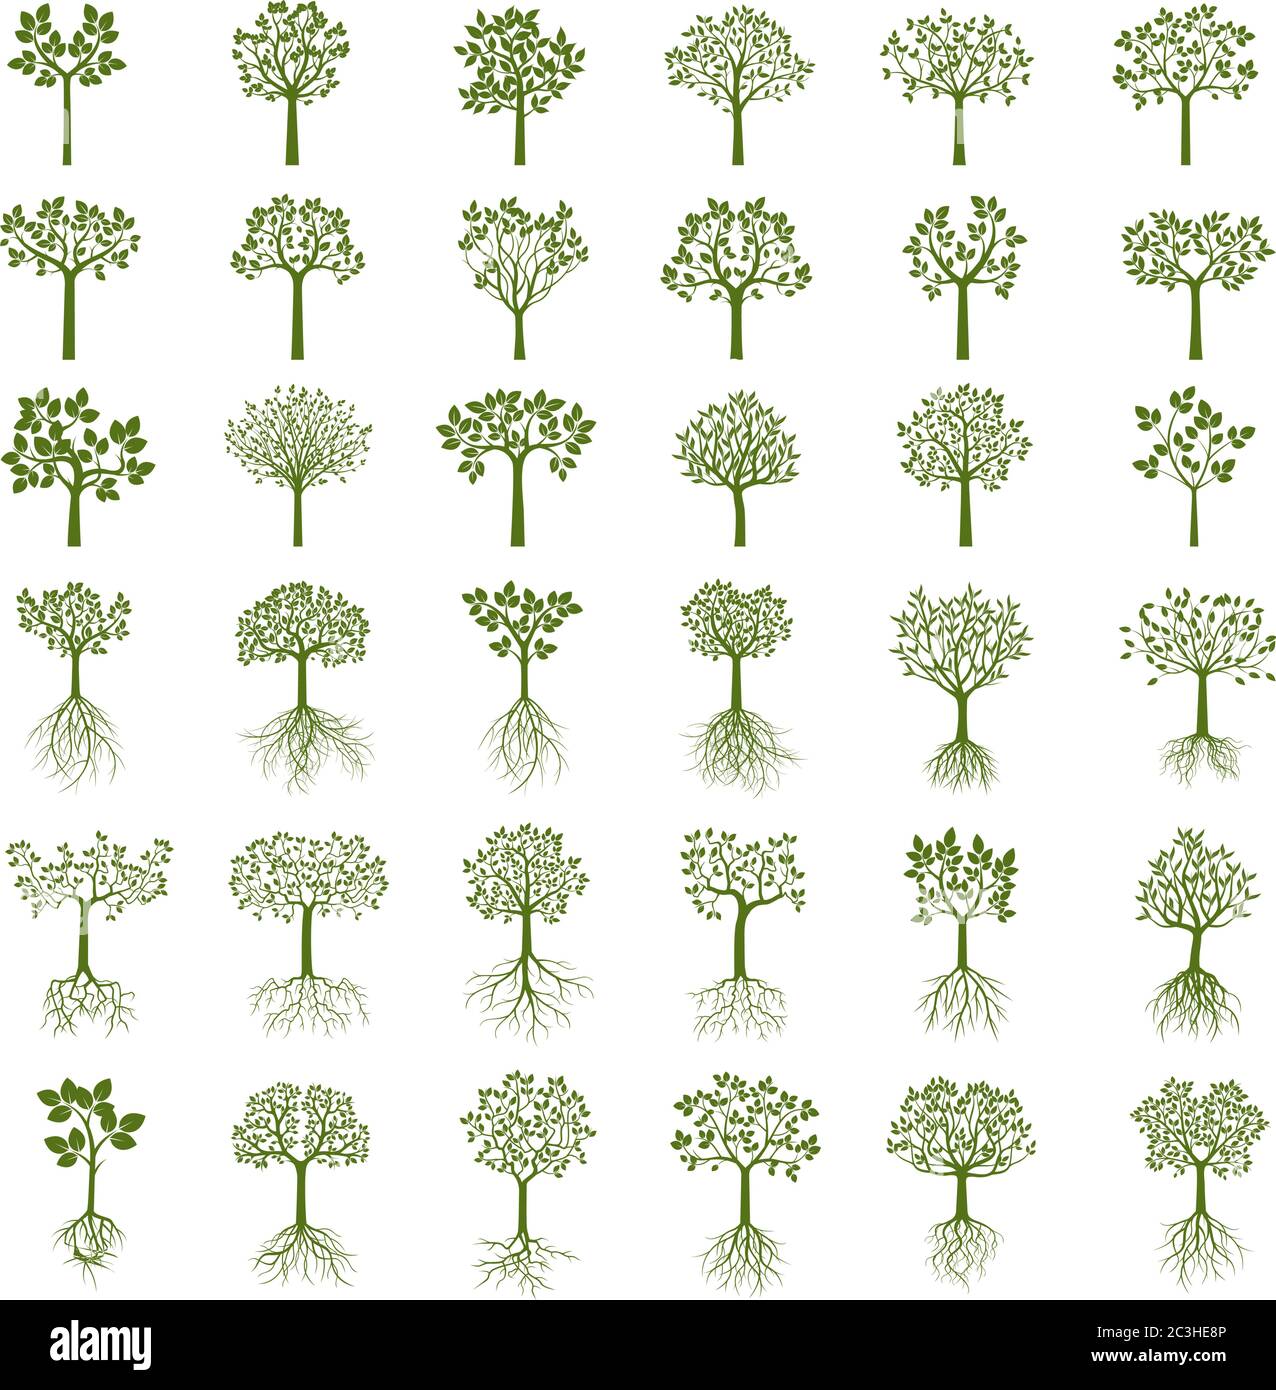 Eine Reihe von grünen Bäumen. Vectro EPS-Dateien. Stock Vektor